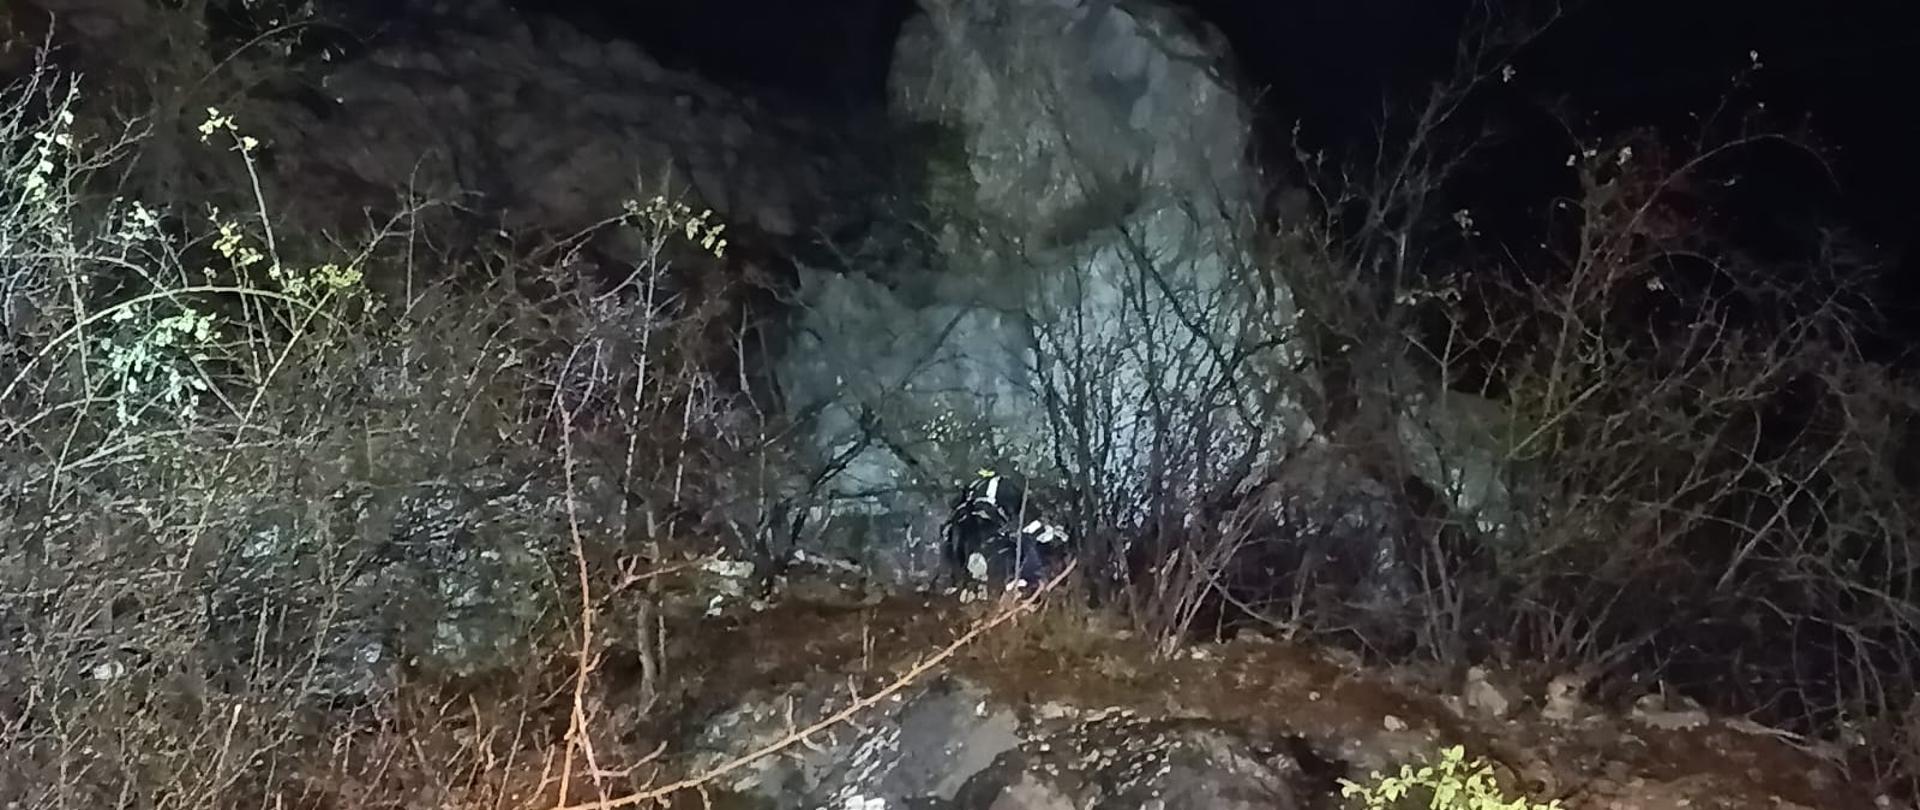 Zdjęcie przedstawia fragment kamieniołomu. Pod skałą, na półce skalnej słabo widoczni pochyleni nad poszkodowaną znajdują się ratownicy. 